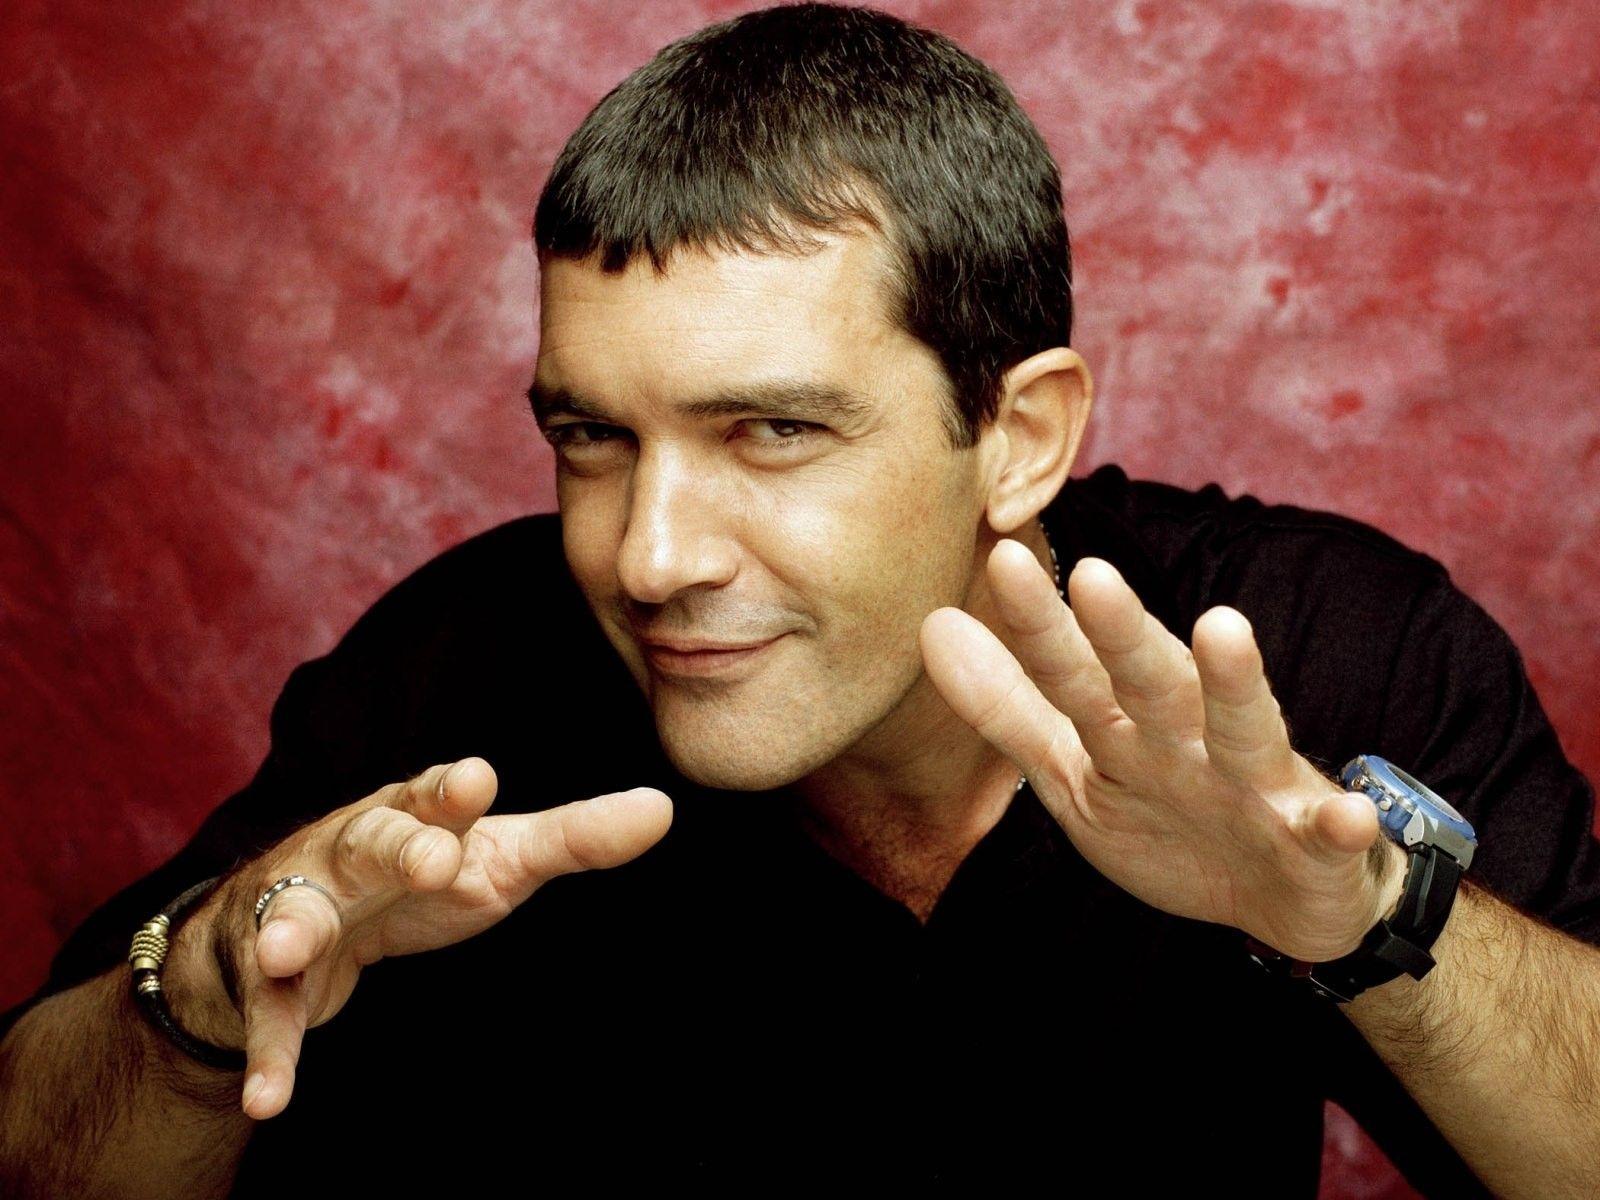 Antonio banderas, Actor, Man, Emotions, Gestures wallpaper